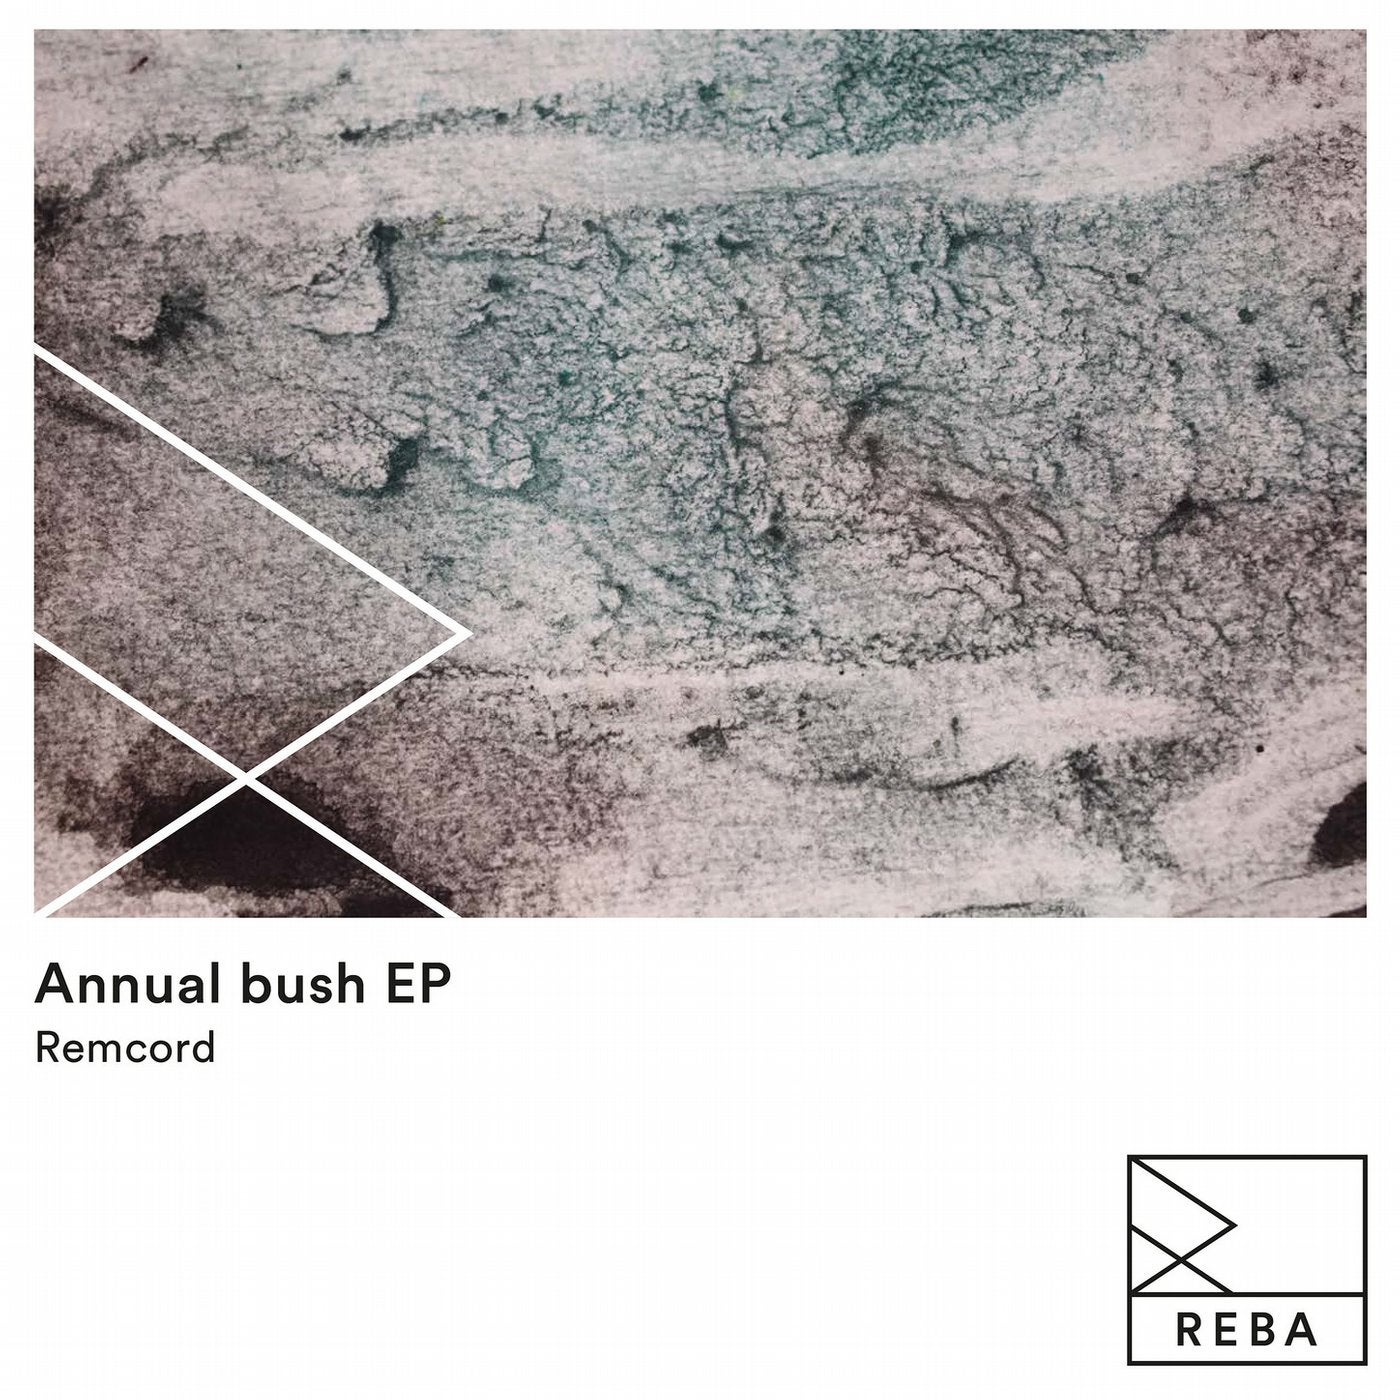 Annual Bush EP